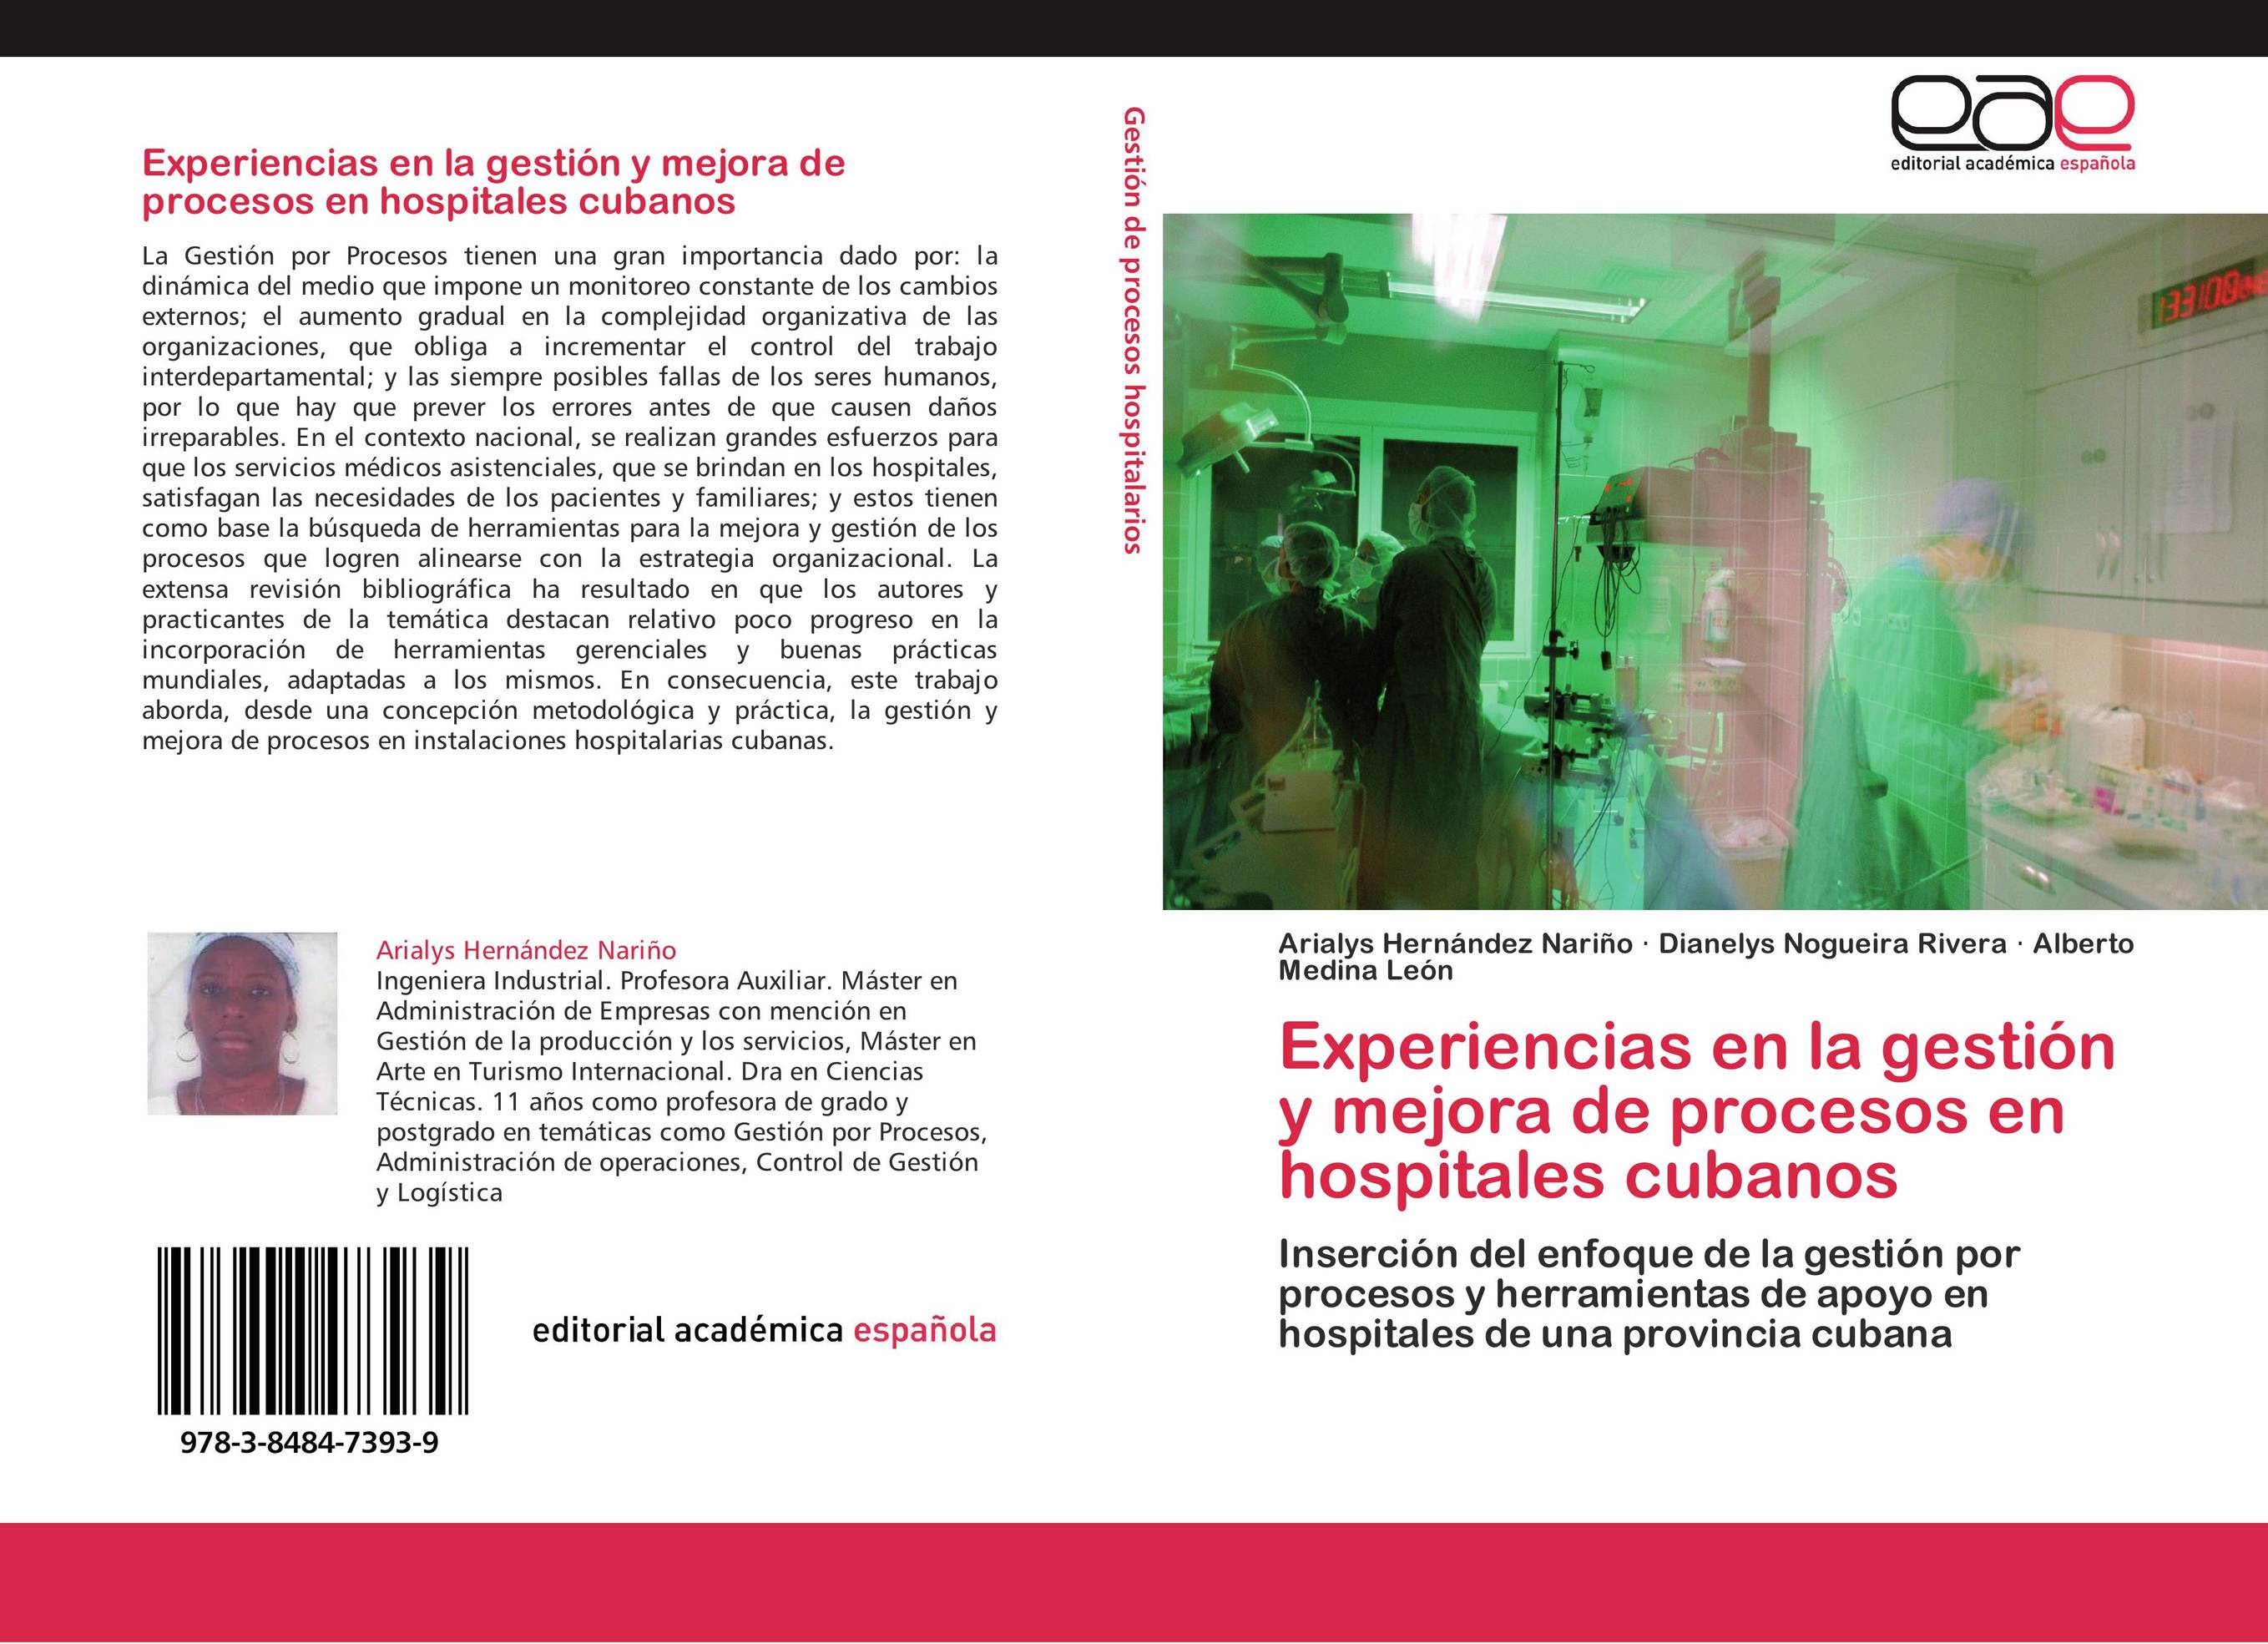 Experiencias en la gestión y mejora de procesos en hospitales cubanos